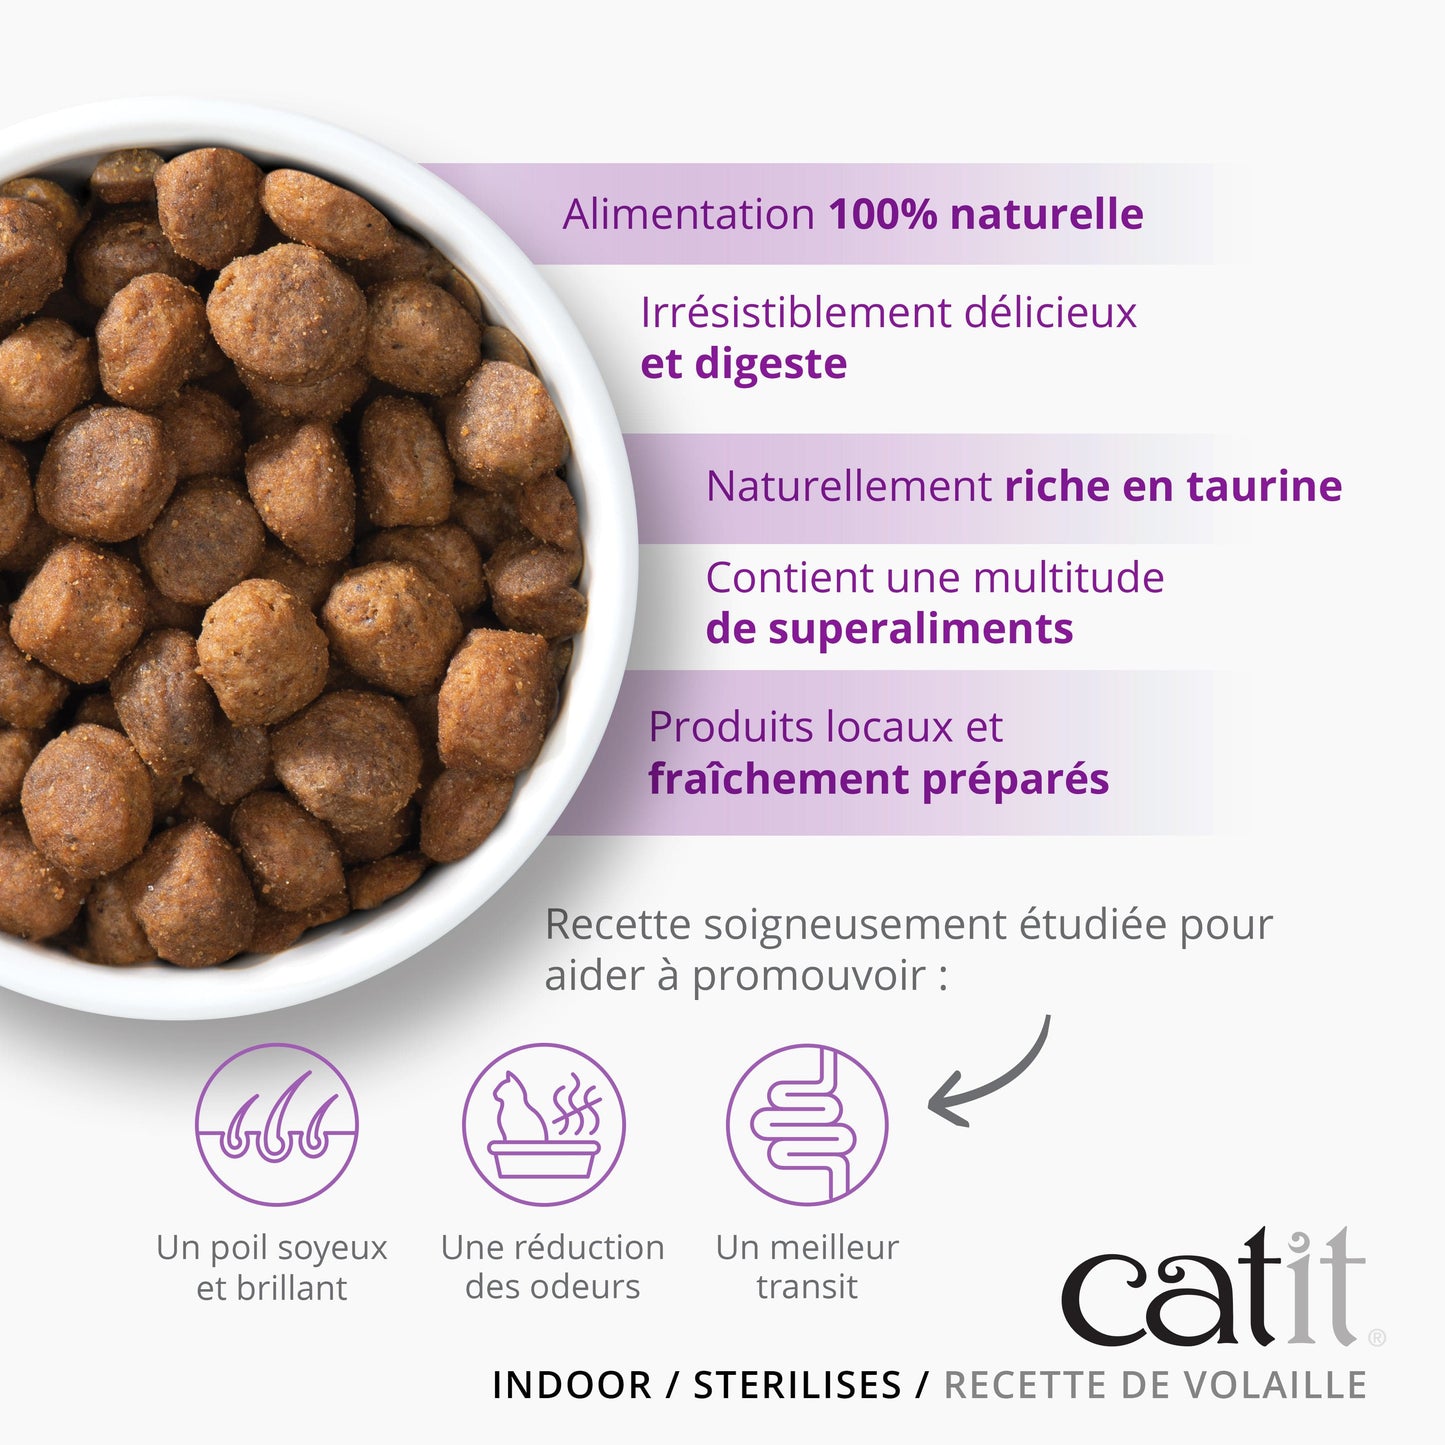 Catit Recipes ─ Croquettes Indoor  adulte, 400 g